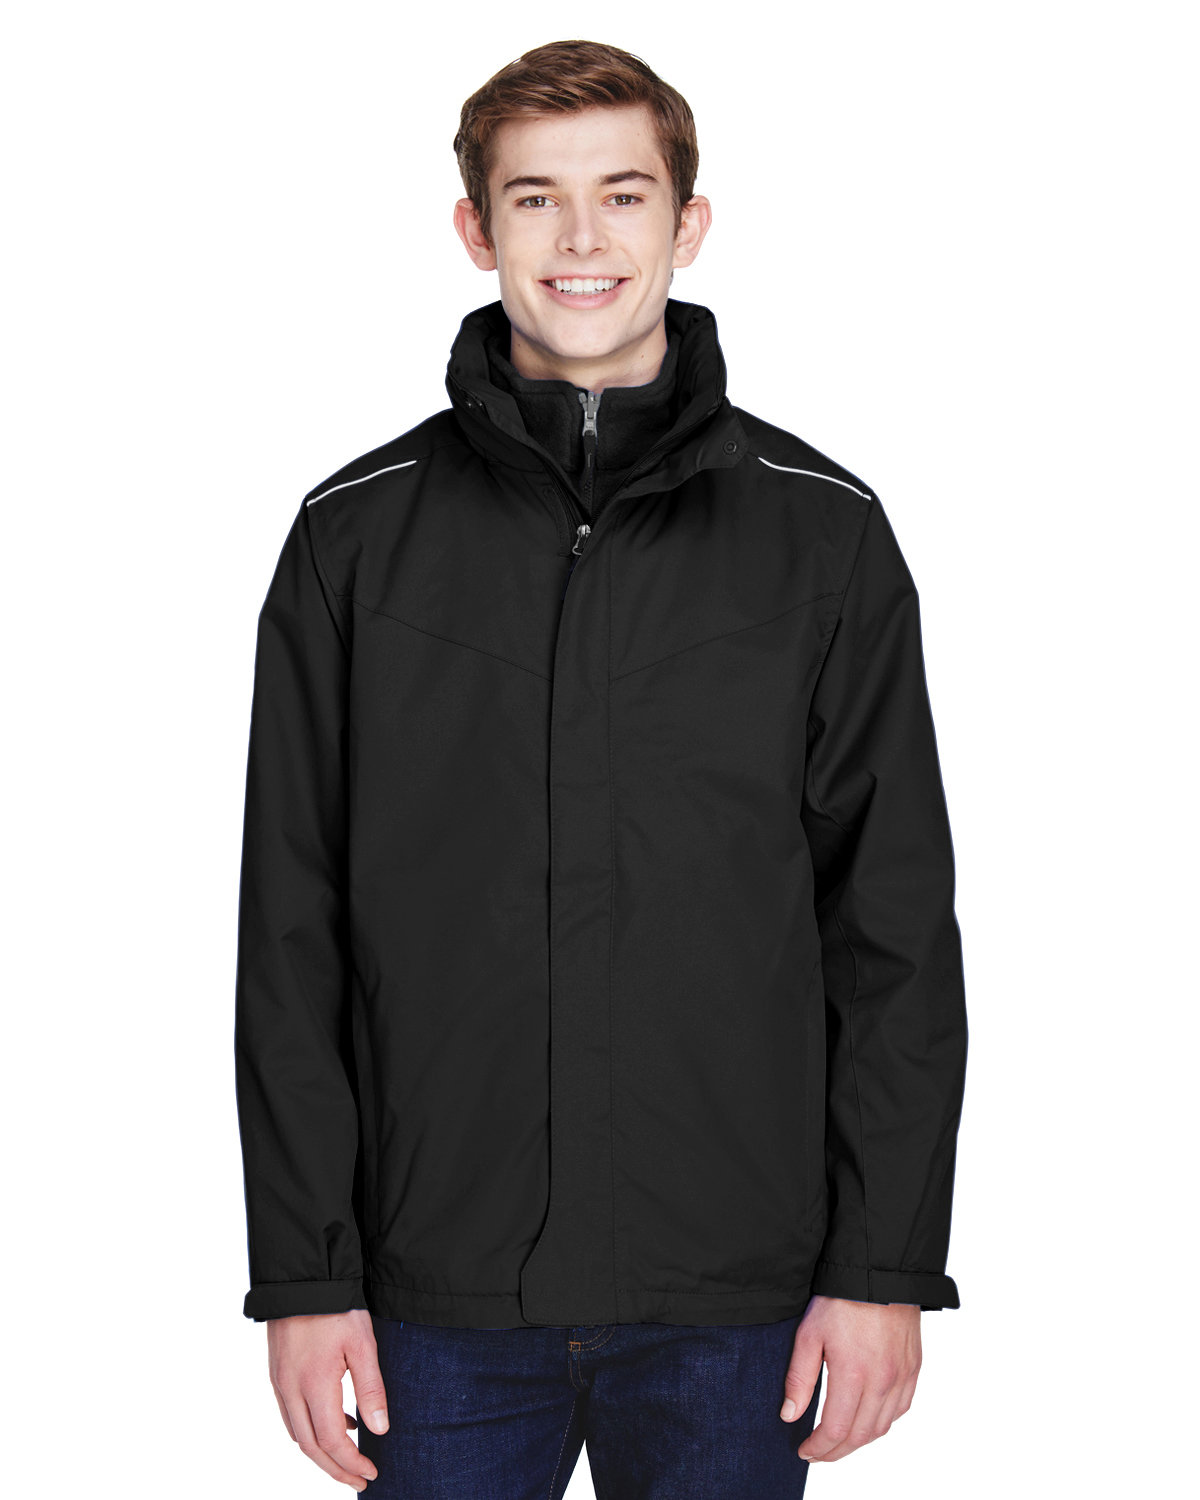 CORE365 Men's Region 3-in-1 Jacket with Fleece Liner black 